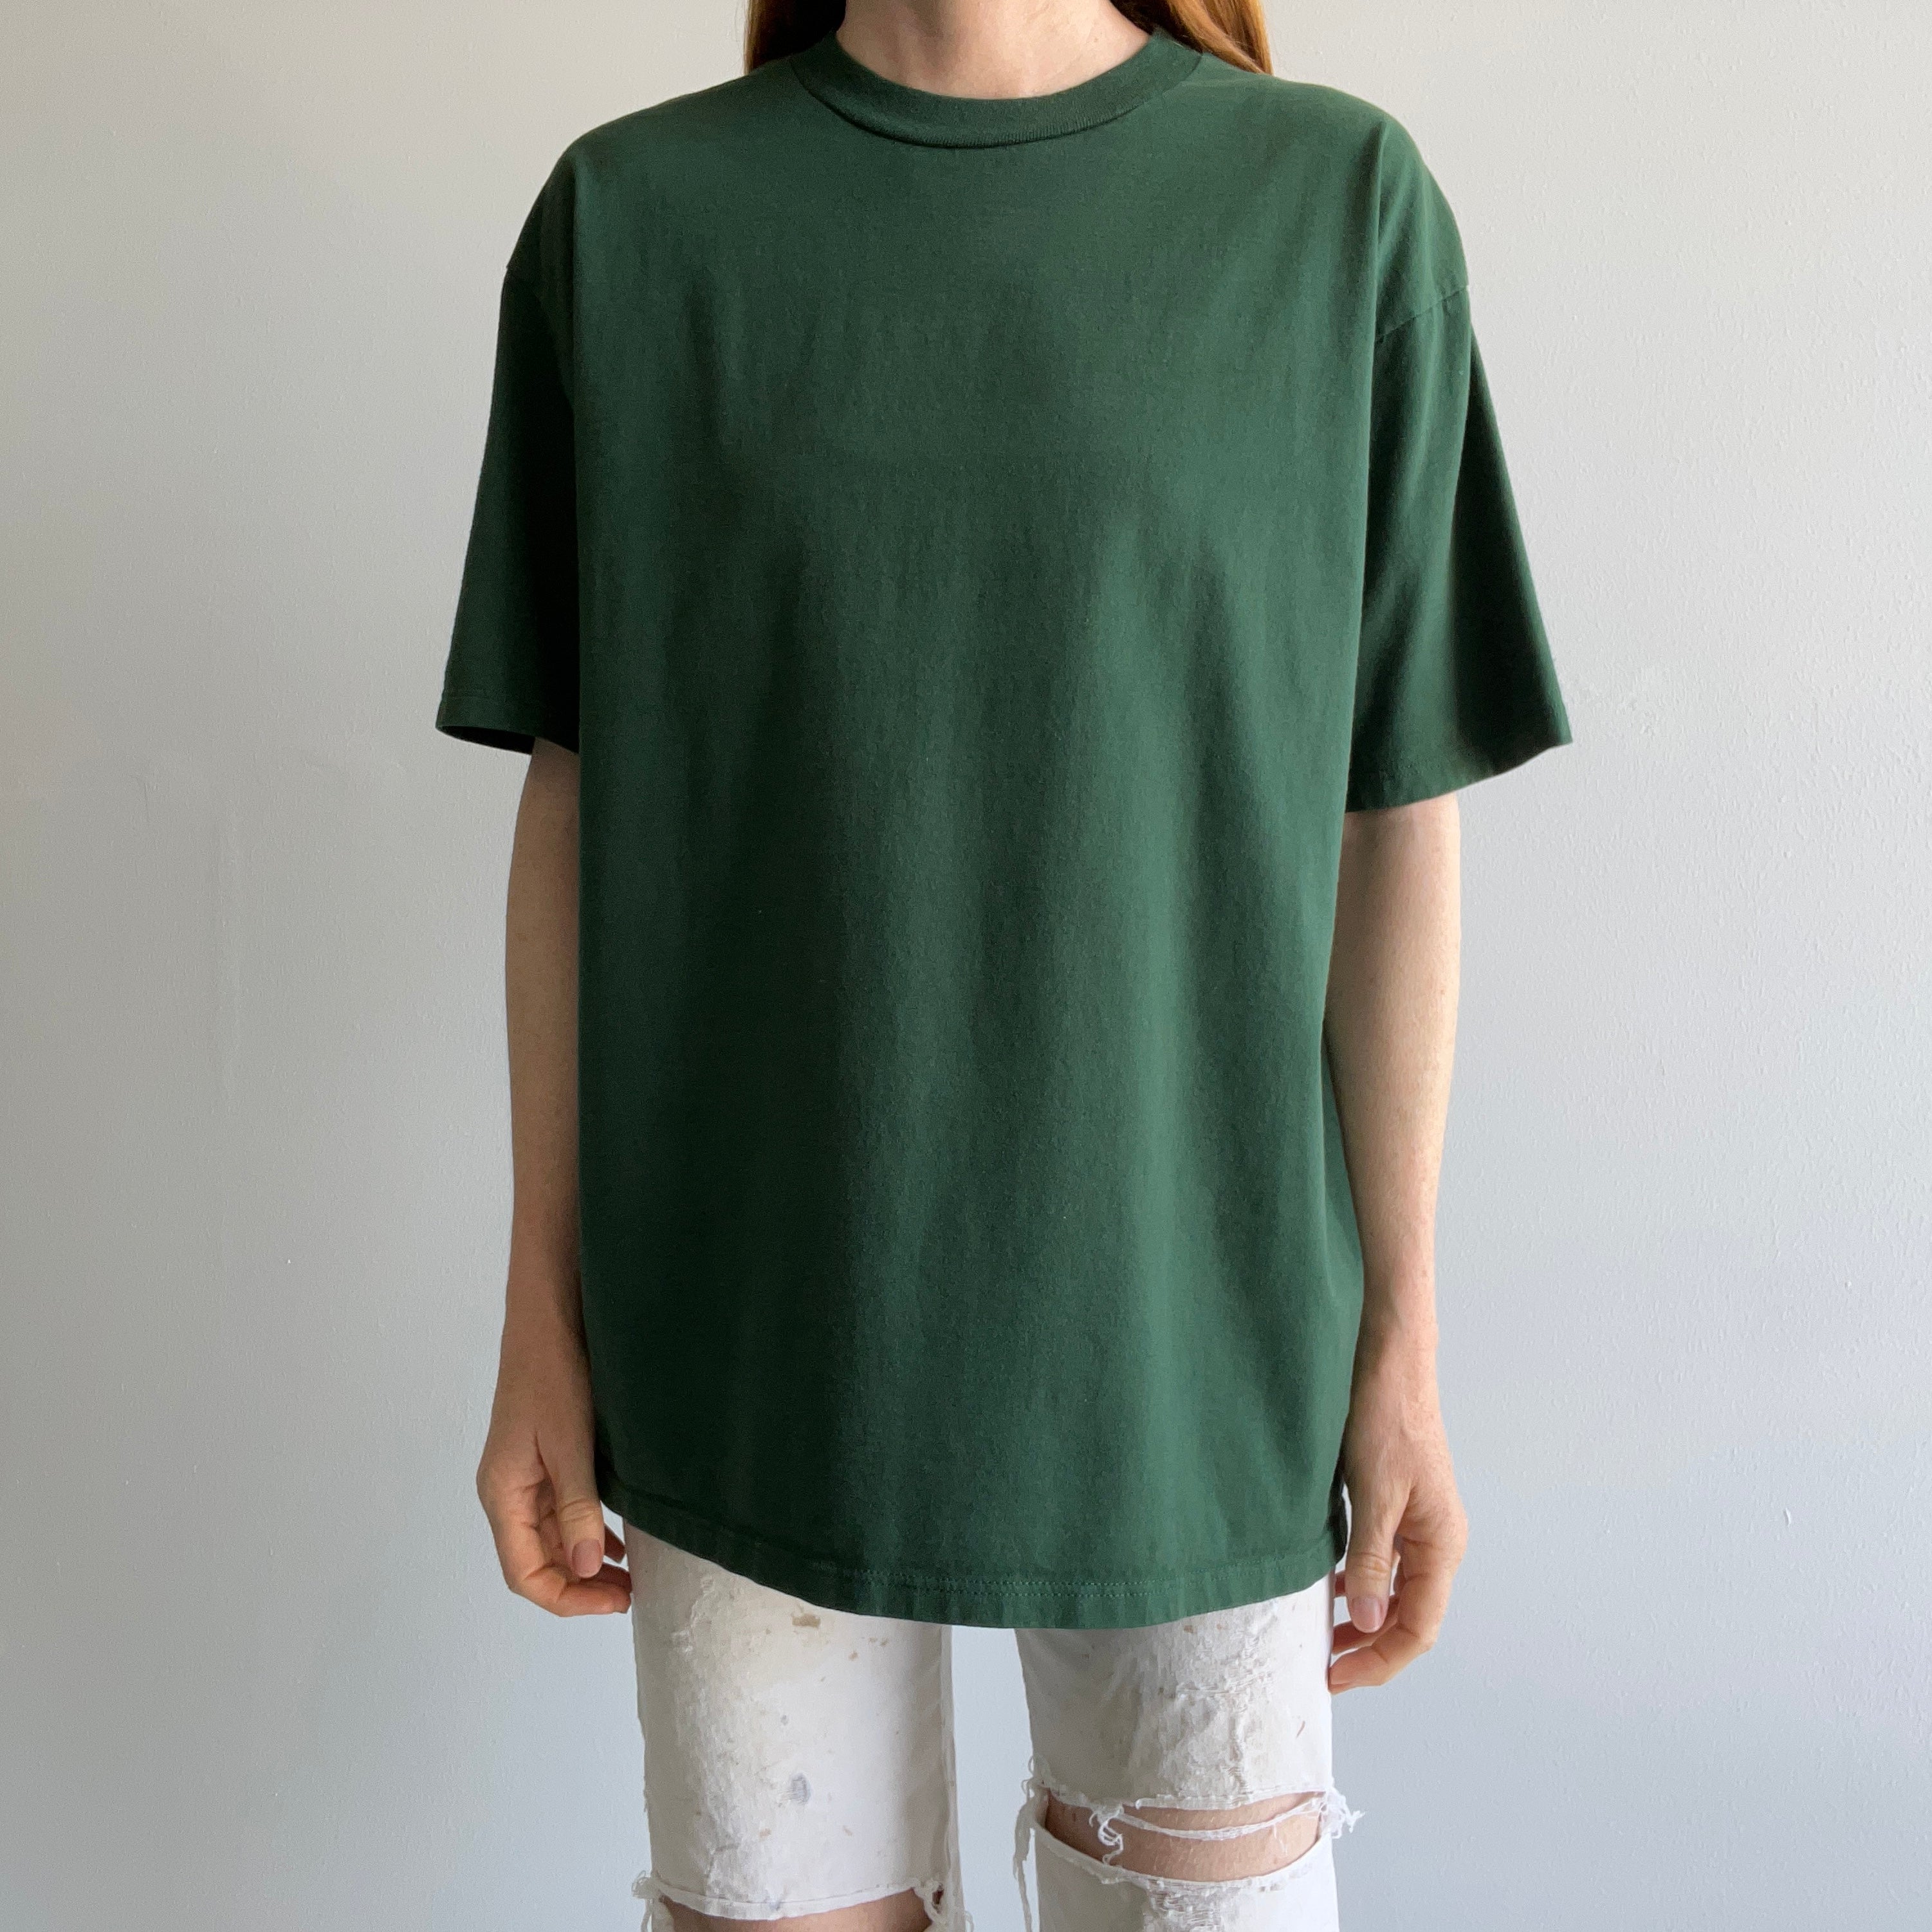 1980s Cypress Green T-Shirt - USA Made